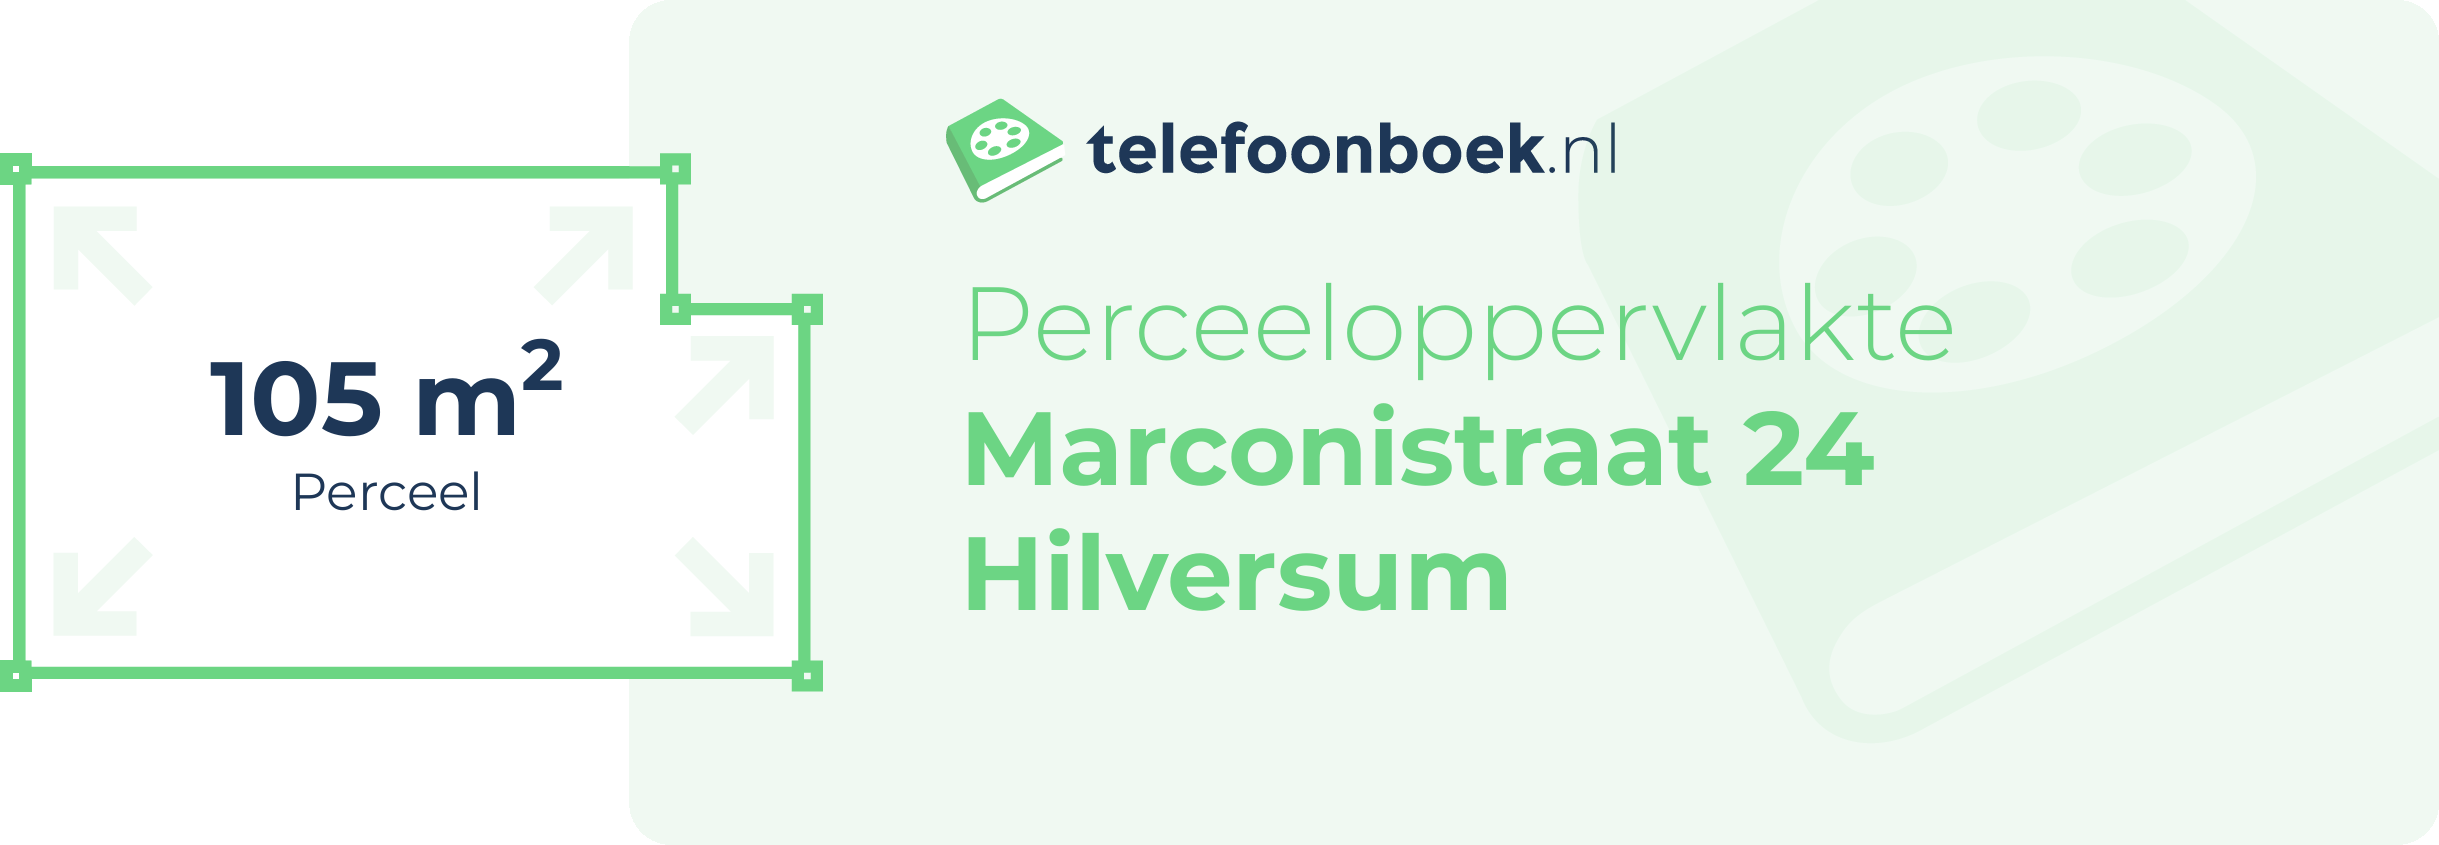 Perceeloppervlakte Marconistraat 24 Hilversum